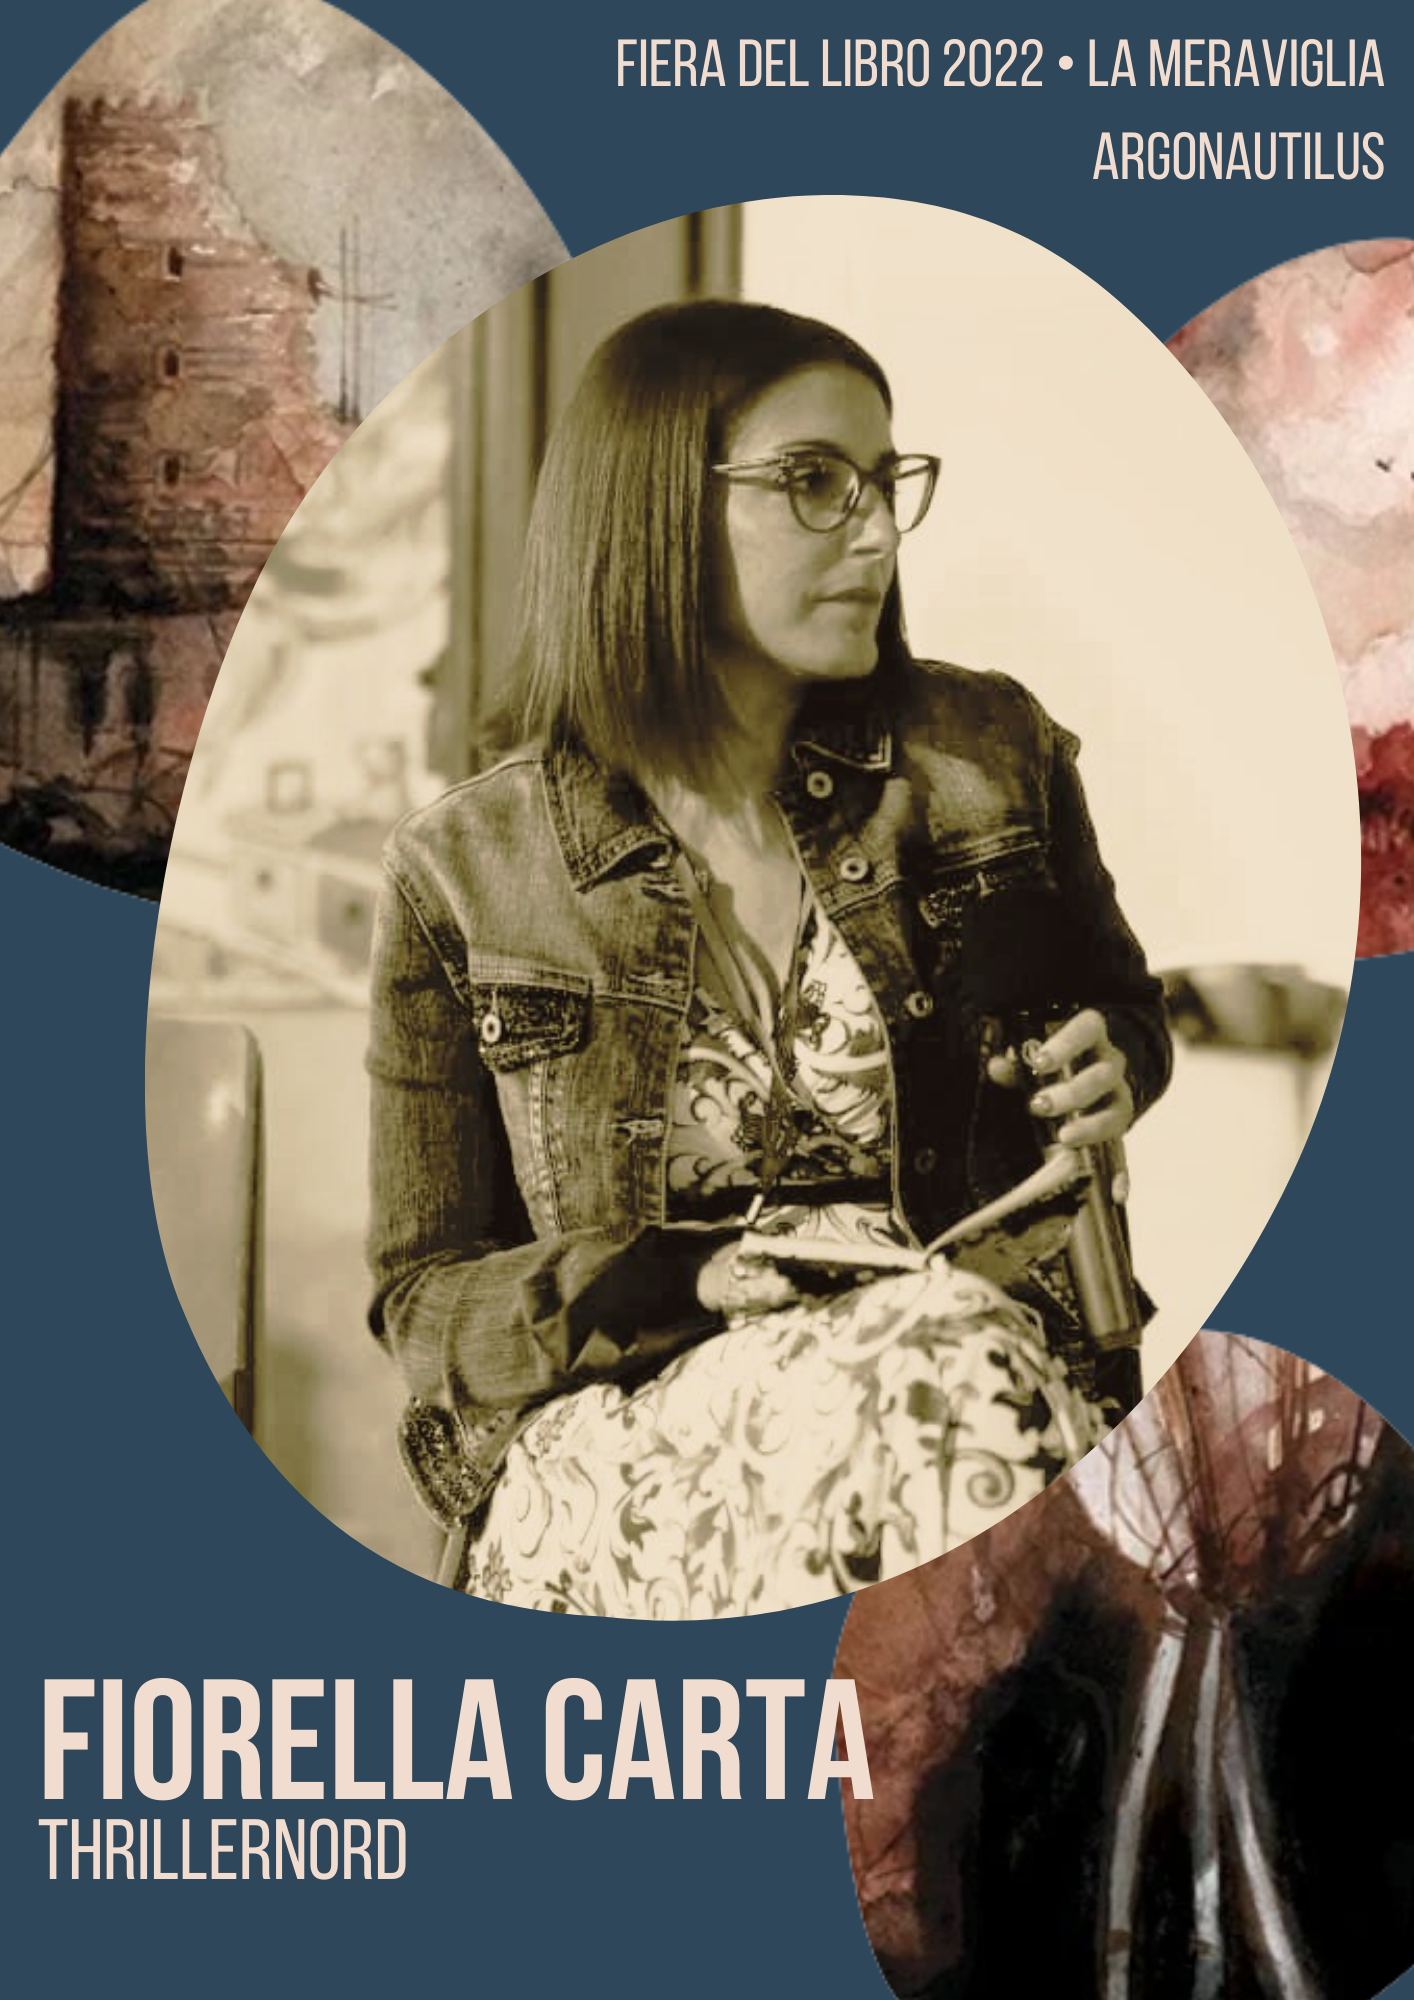 Fiorella Carta